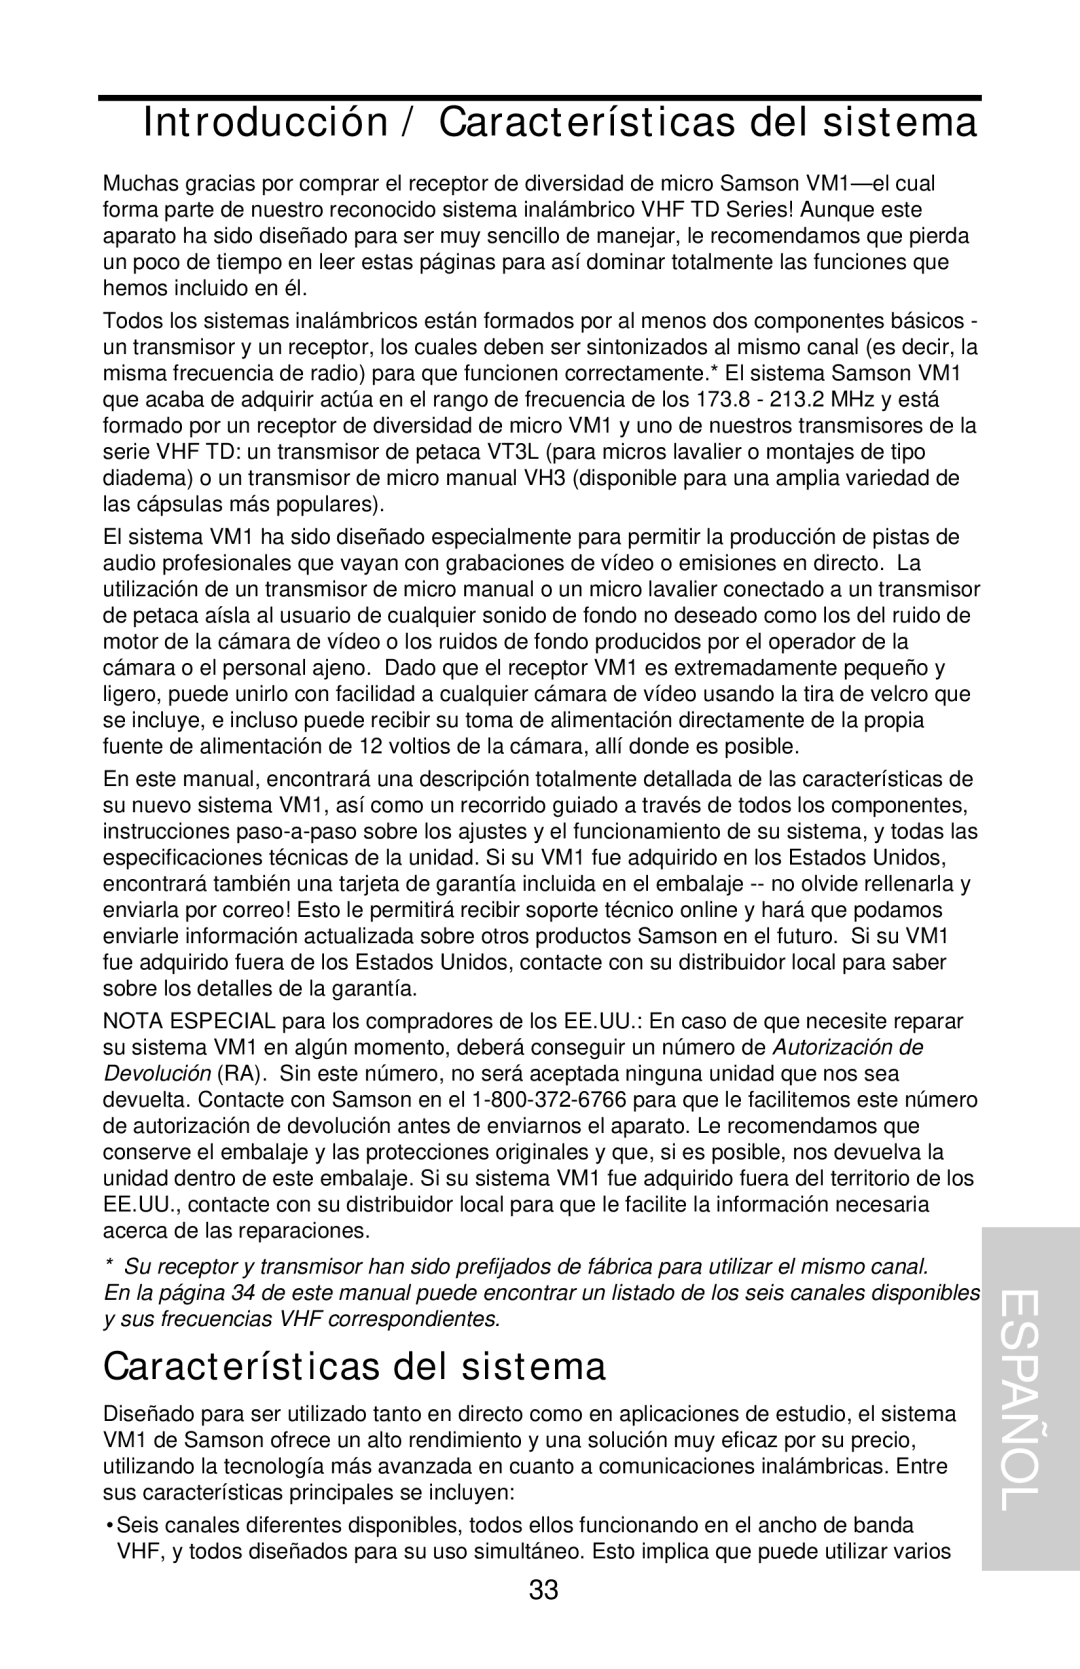 Samson VHF Micro TRUE DIVERSITY WIRELESS owner manual Españ Ol, Introducción / Características del sistema 